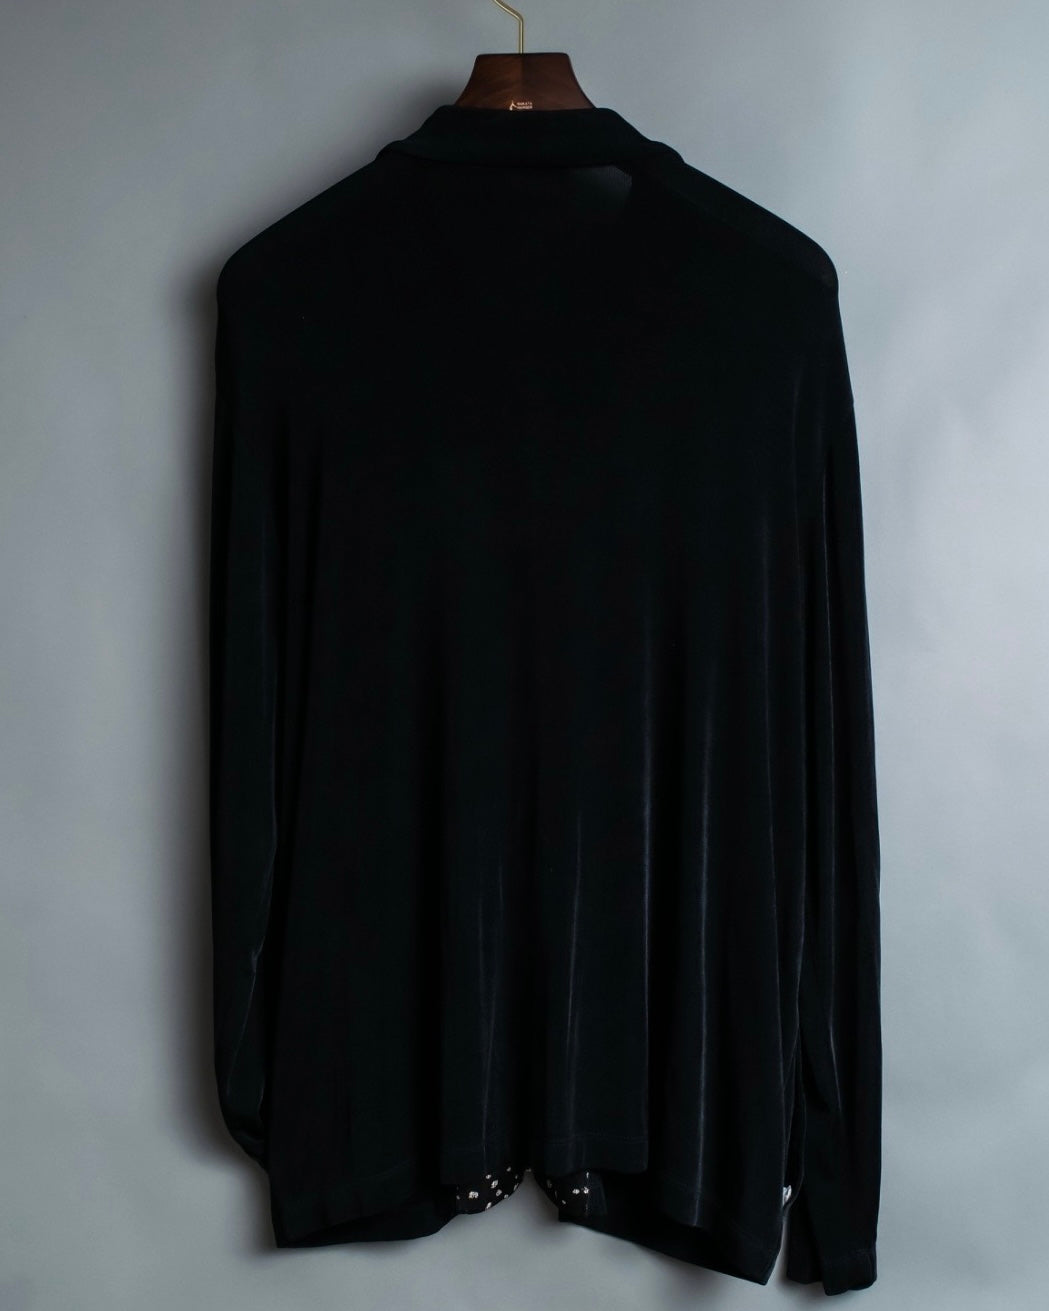 CHICO's design sheer black jacket